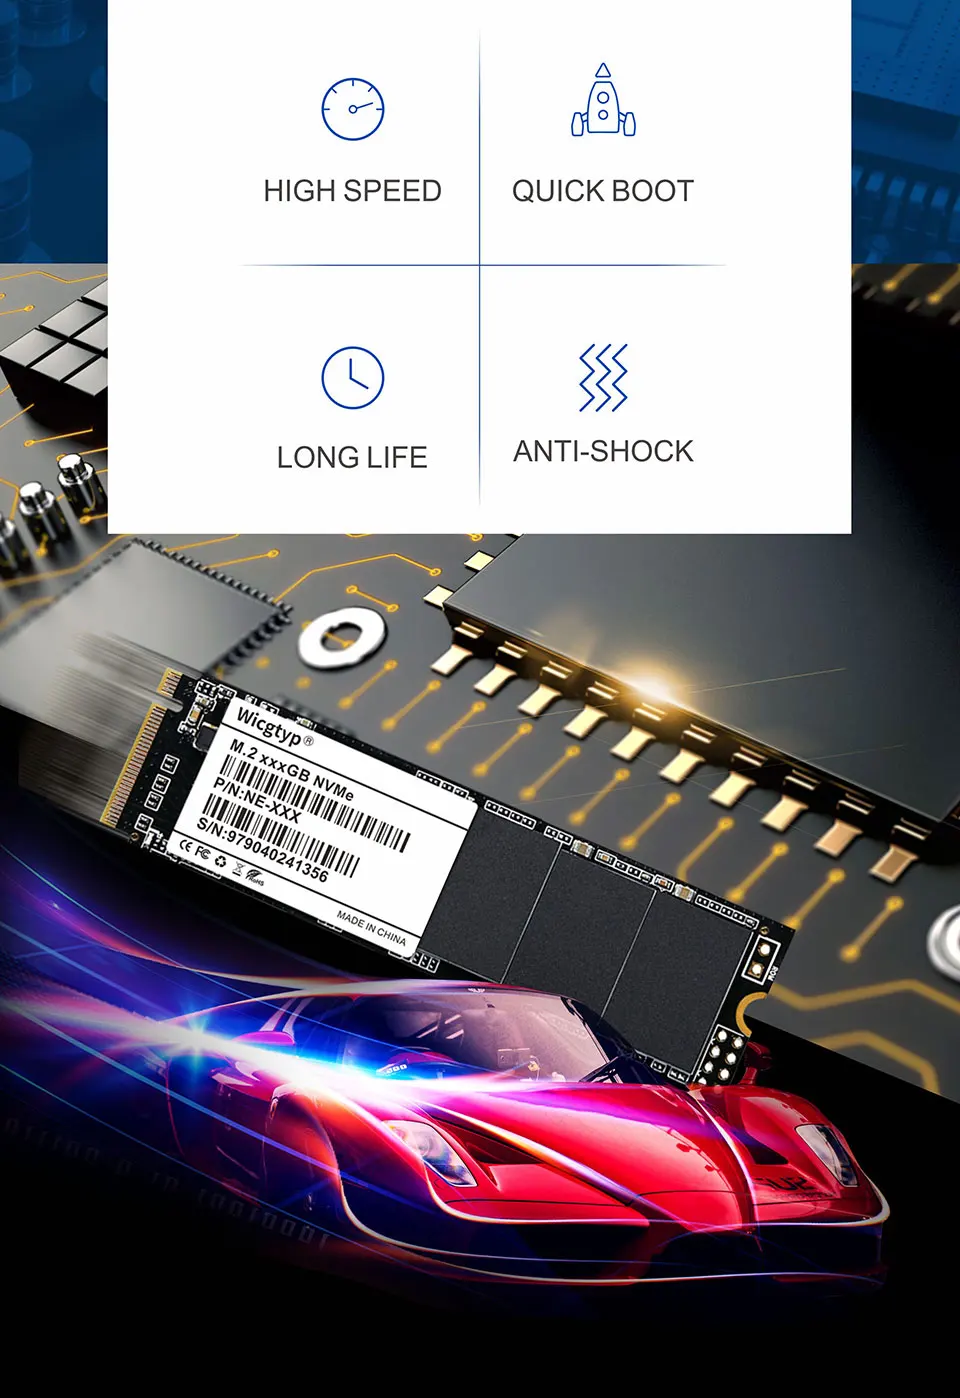 Wicgtyp M.2 SSD PCIe 256 GB SSD жесткий диск M.2 NVMe диск PCIe SSD внутренний жесткий диск для MSI Тетрадь/Thinkpad P50